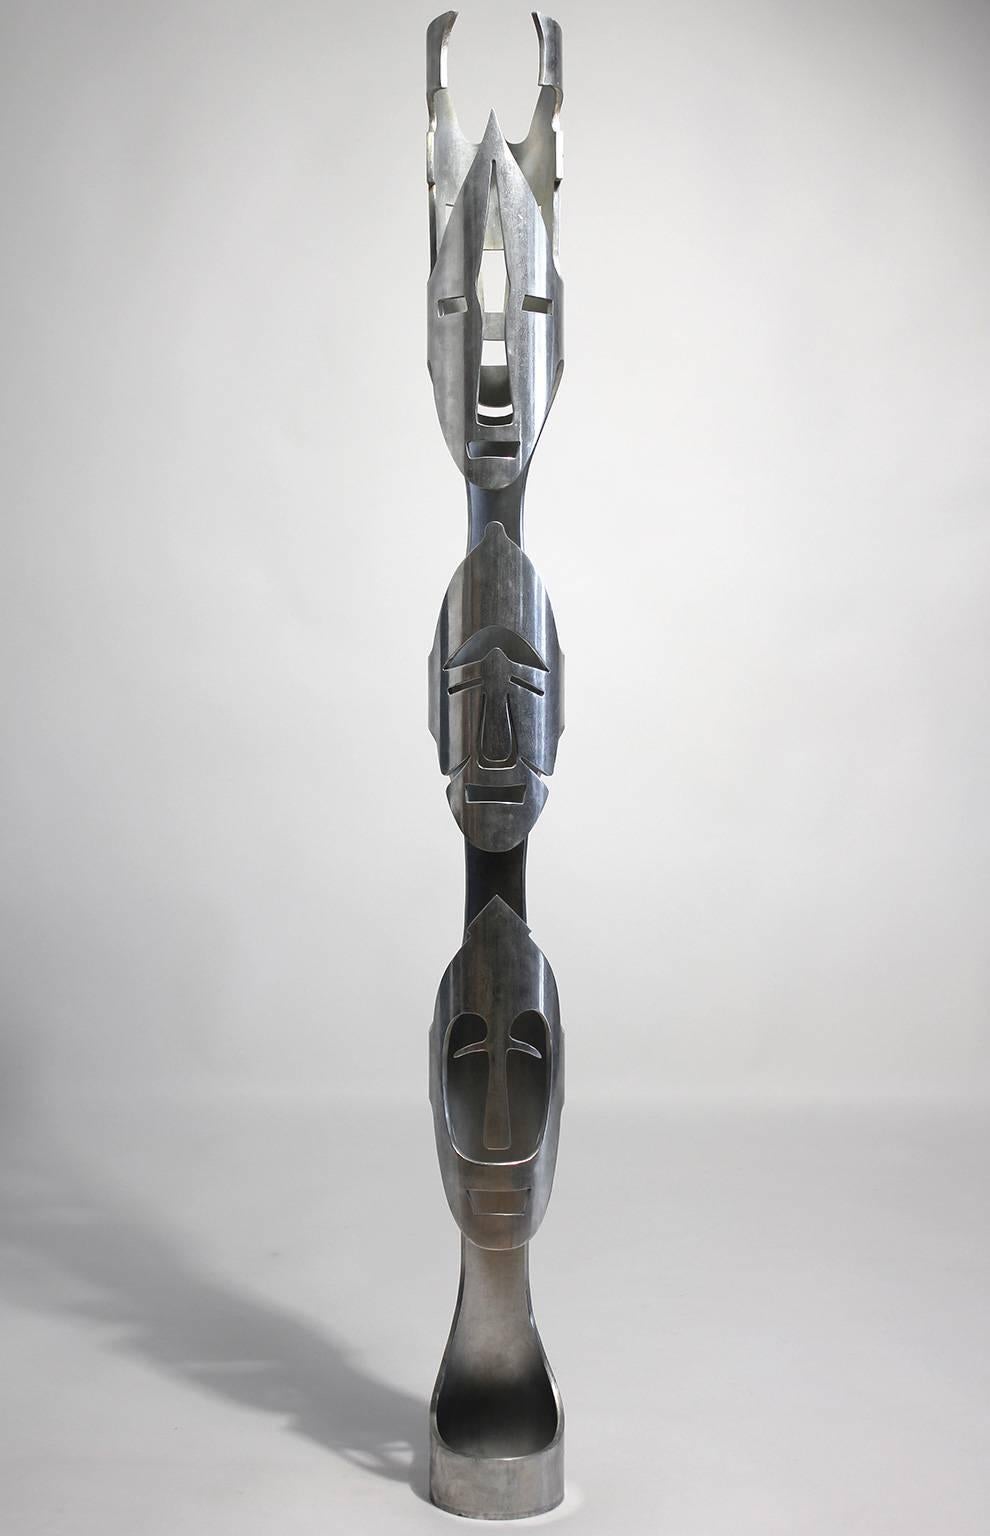 Masque TOTEM moderniste, sculpture abstraite en aluminium de 4 pieds de haut. Artiste inconnu.